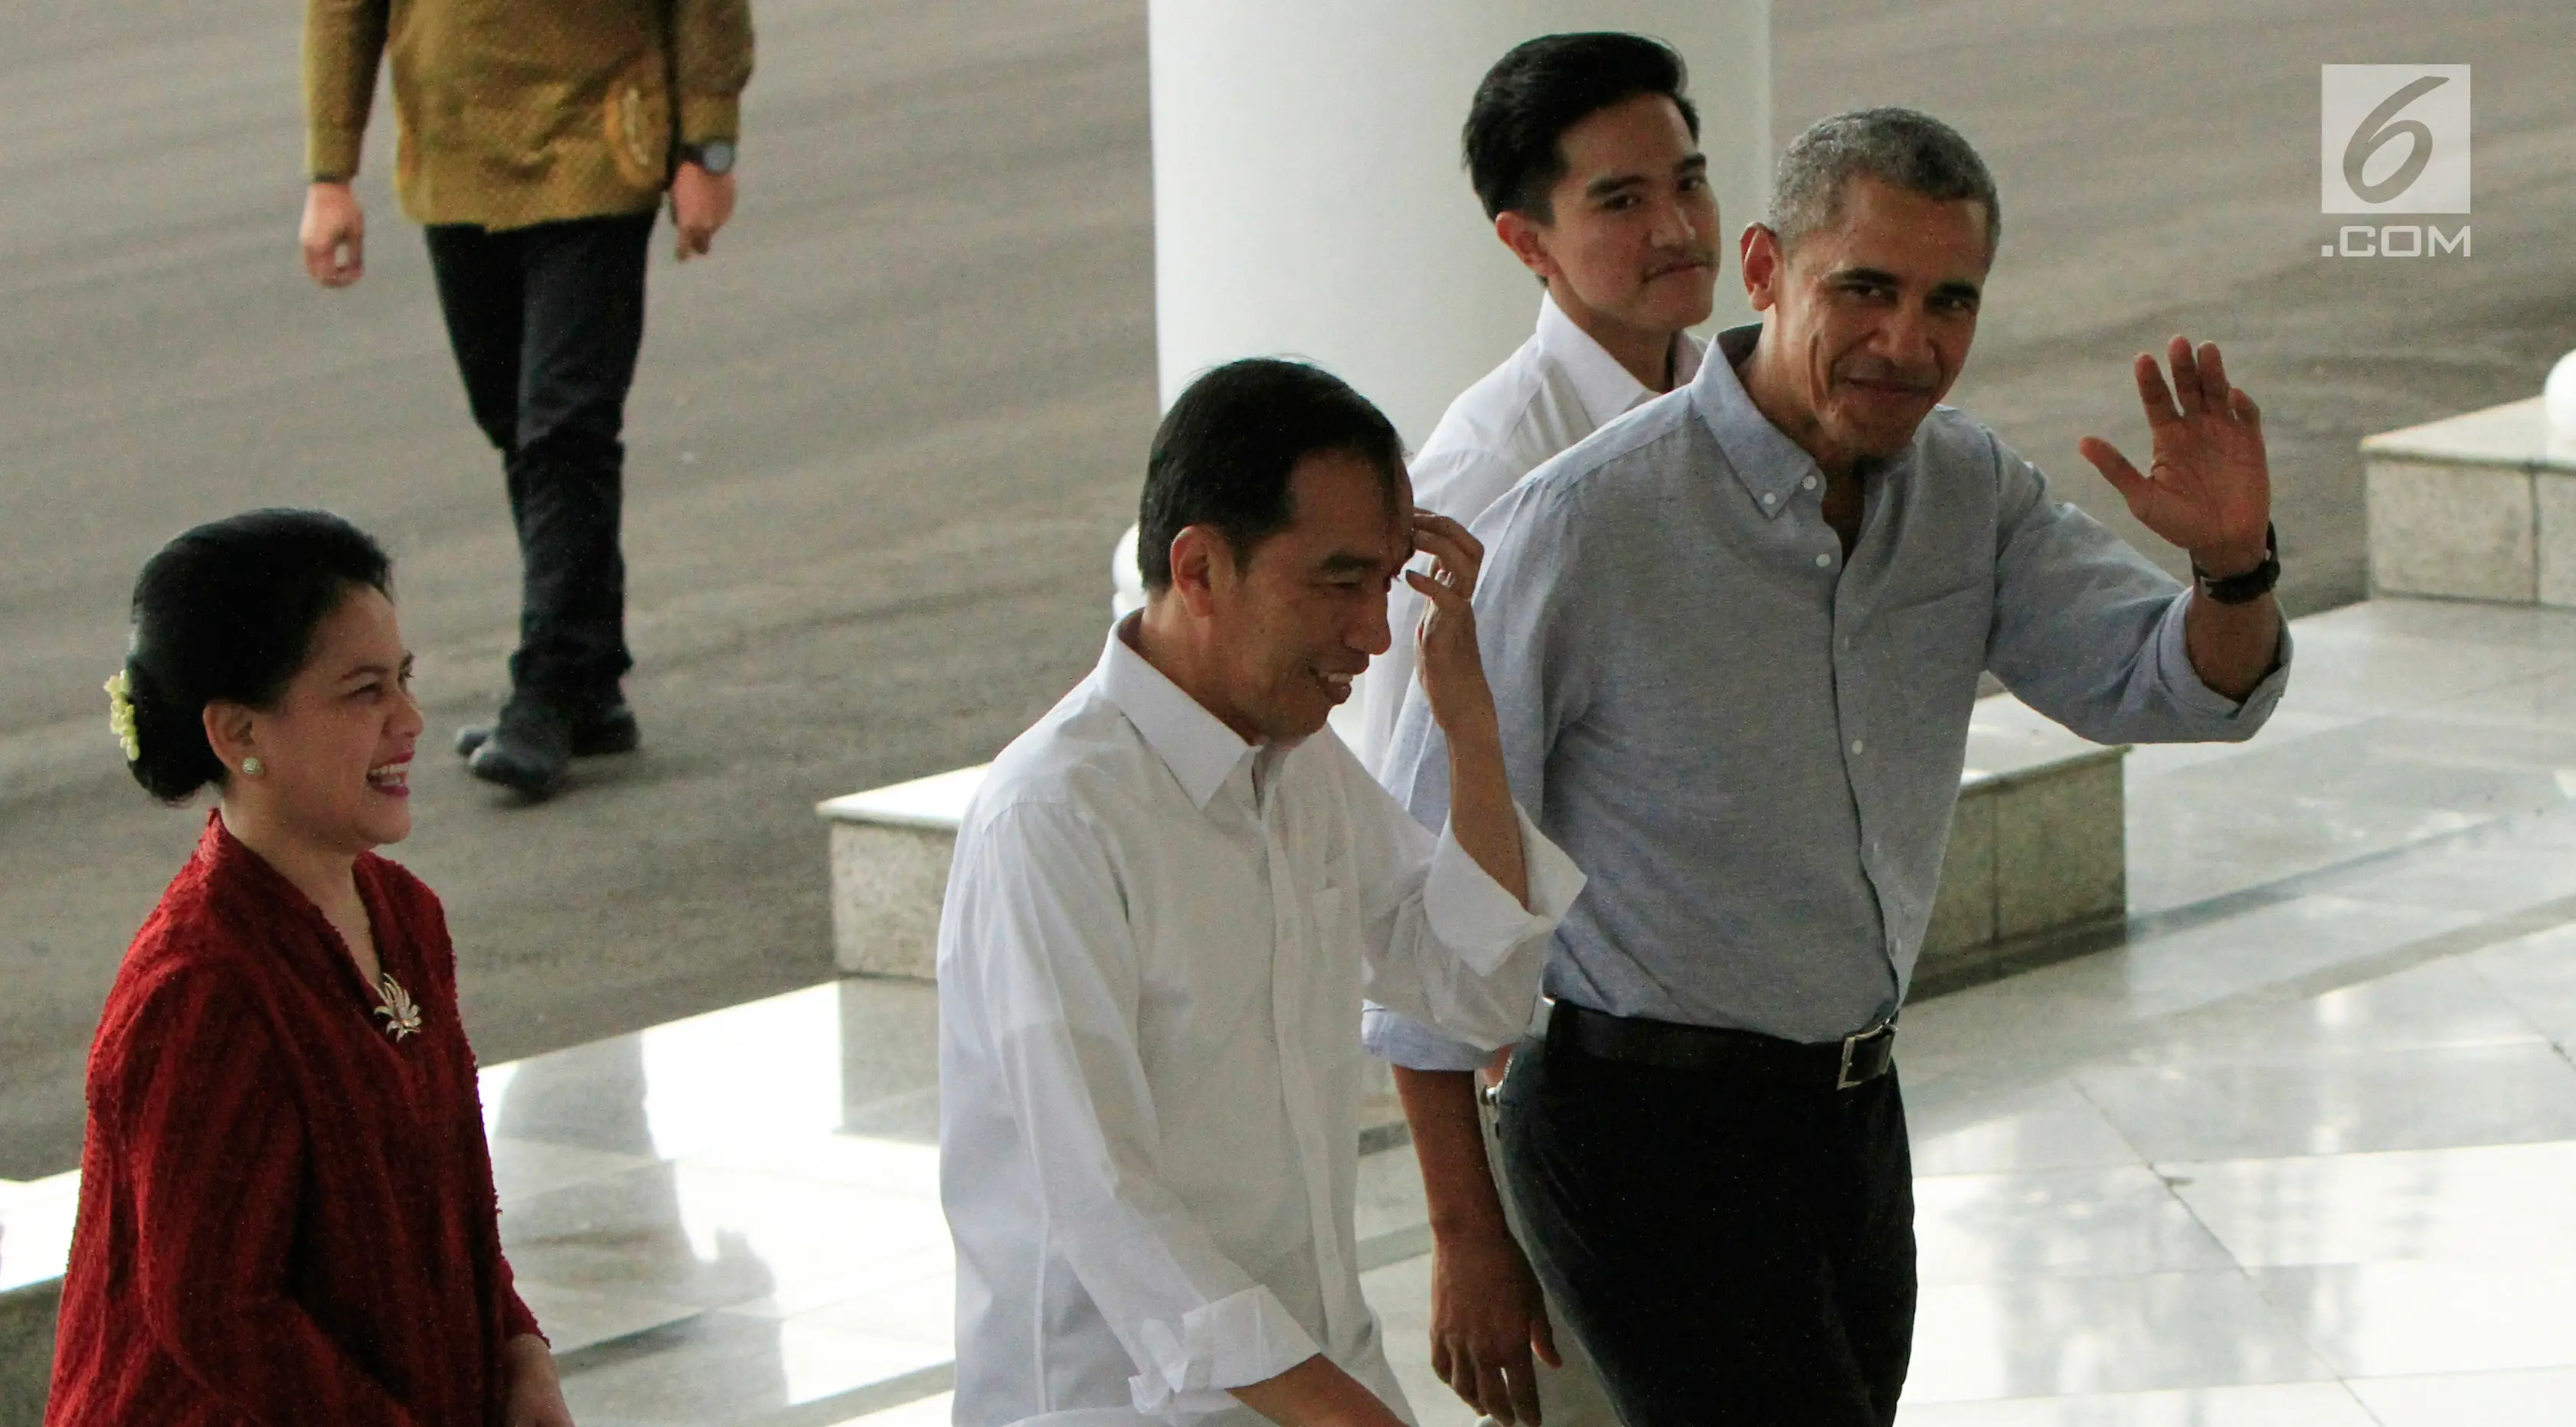 Presiden AS ke 44, Barack Obama ketika disambut Presiden RI Joko Widodo dan Ibu Negara Iriana Widodo di Istana Bogor, Jawa Barat, Jumat (30/6).  (Liputan6.com/Subekti/Pool)